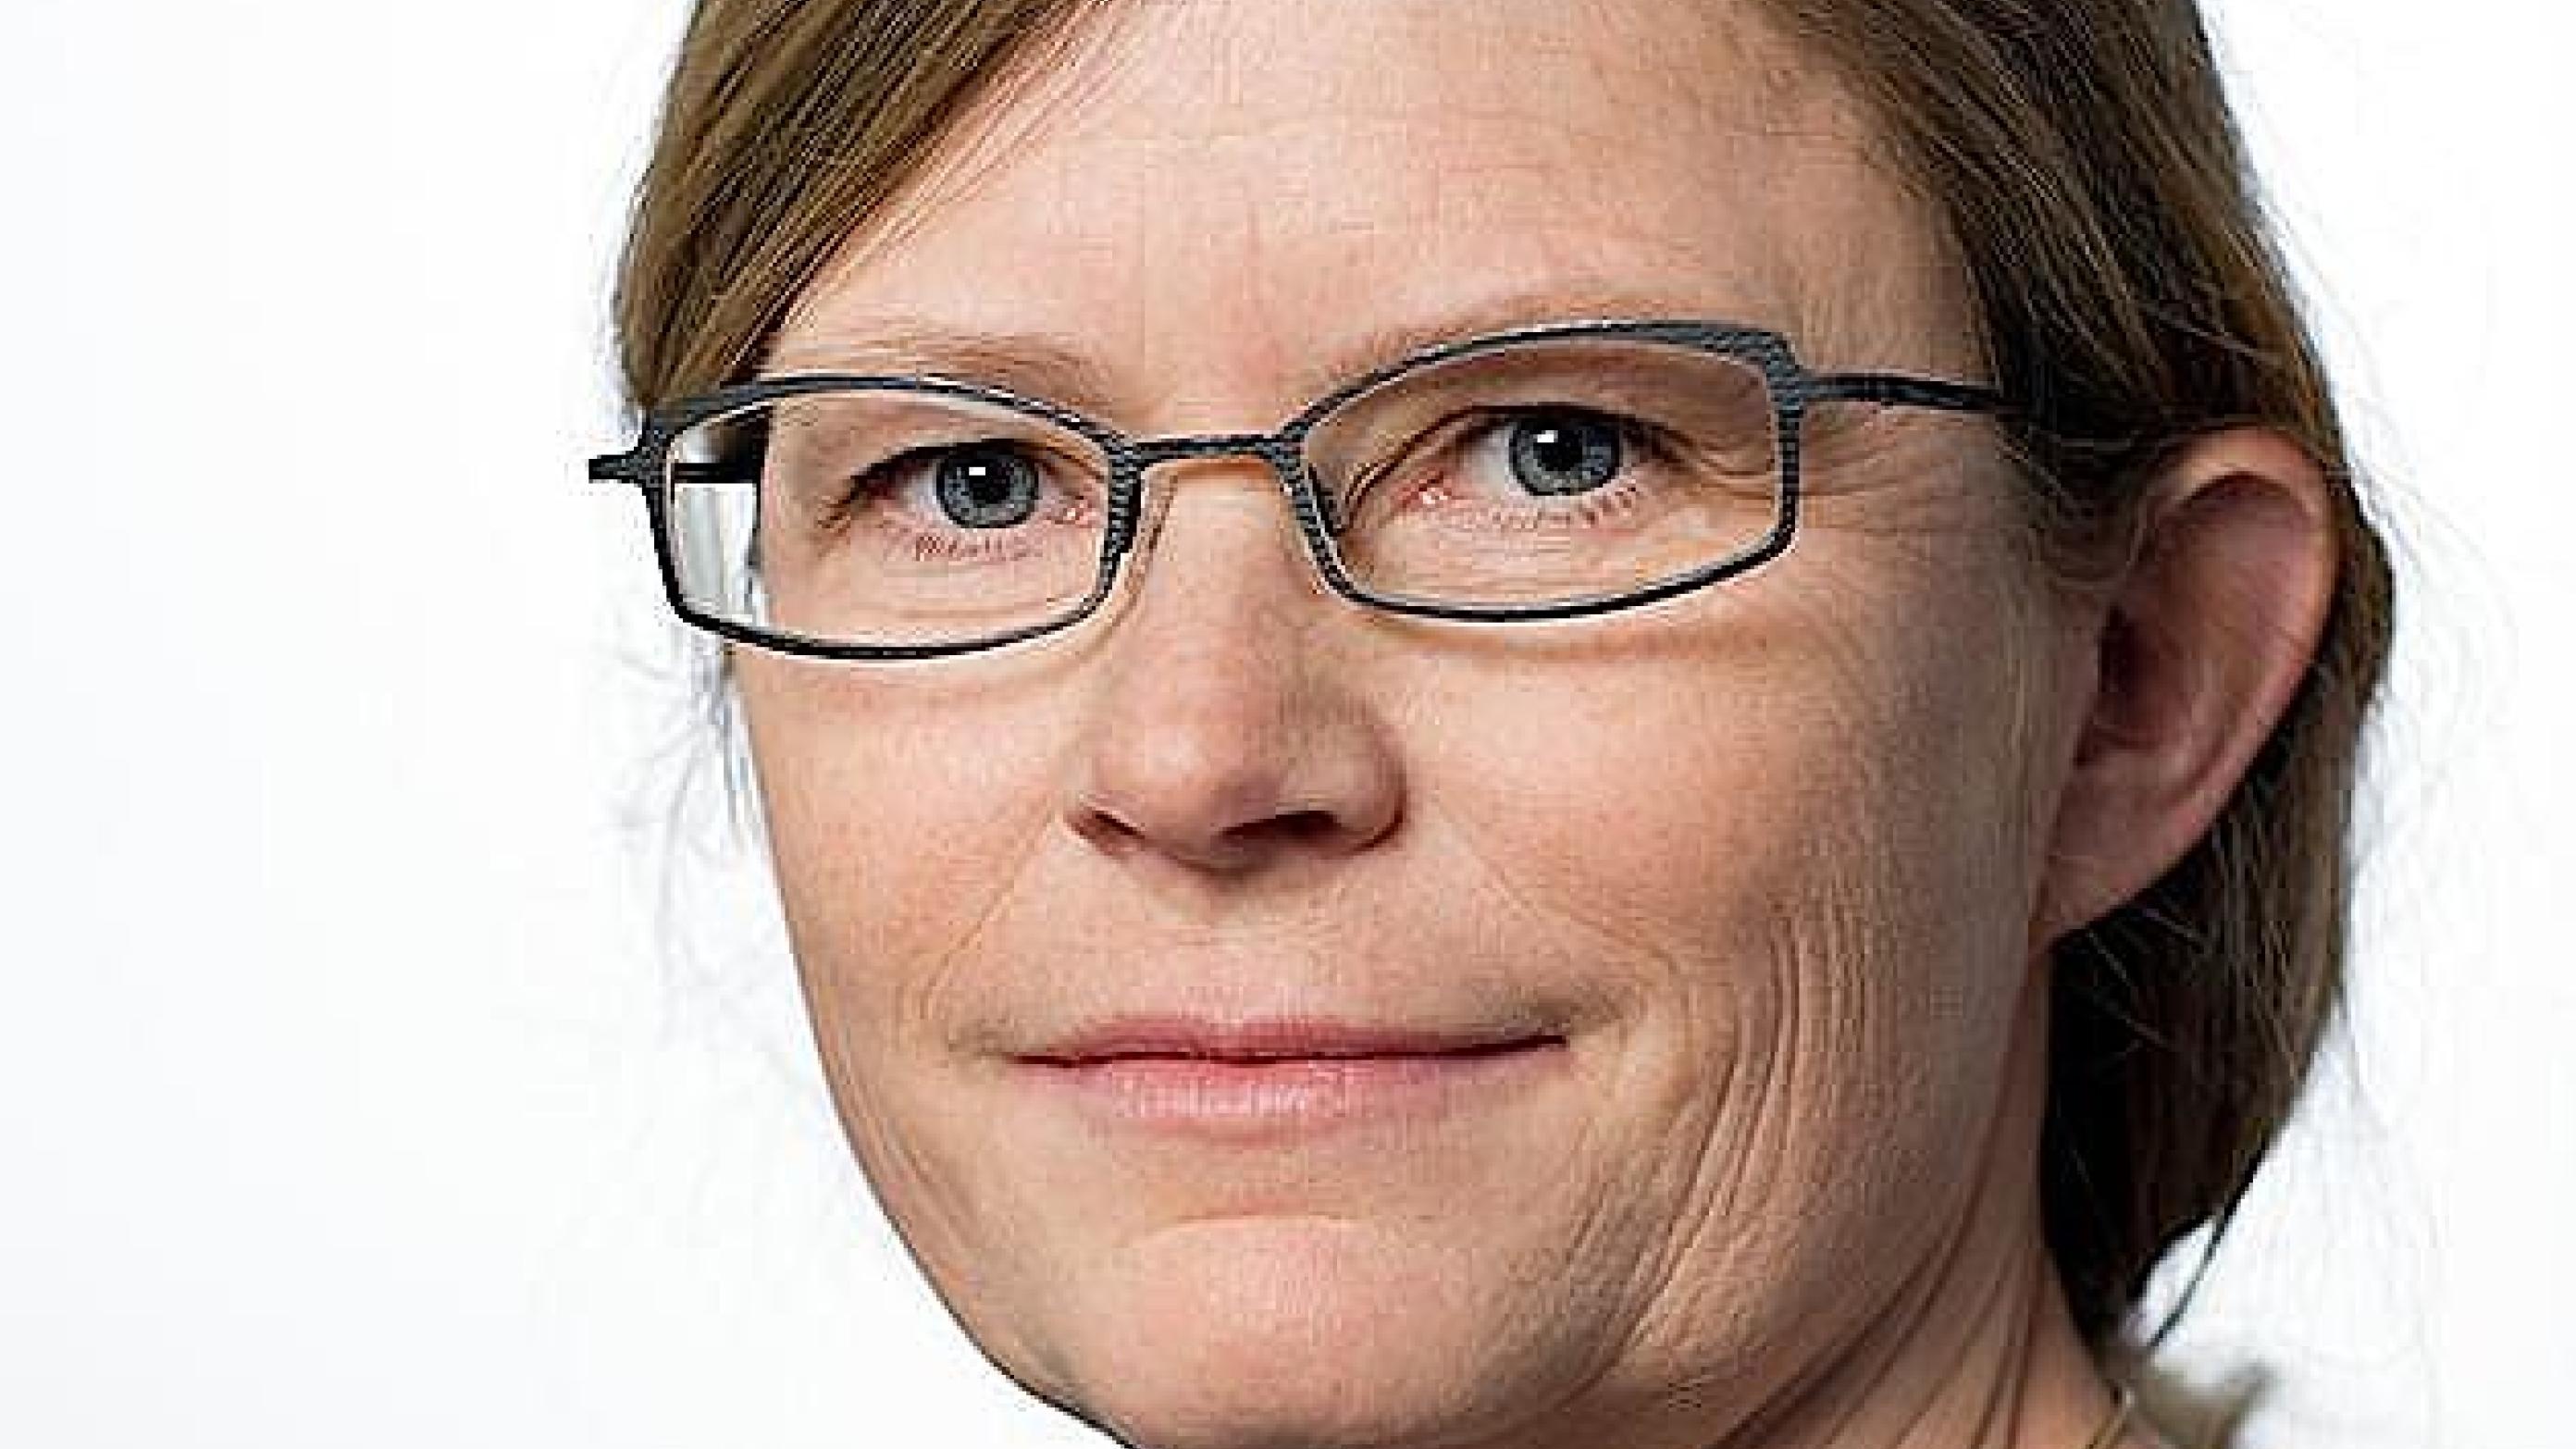 Direktør i Styrelsen for Patientsikkerhed, Anne-Marie Vangsted - beklager uforbeholdent.